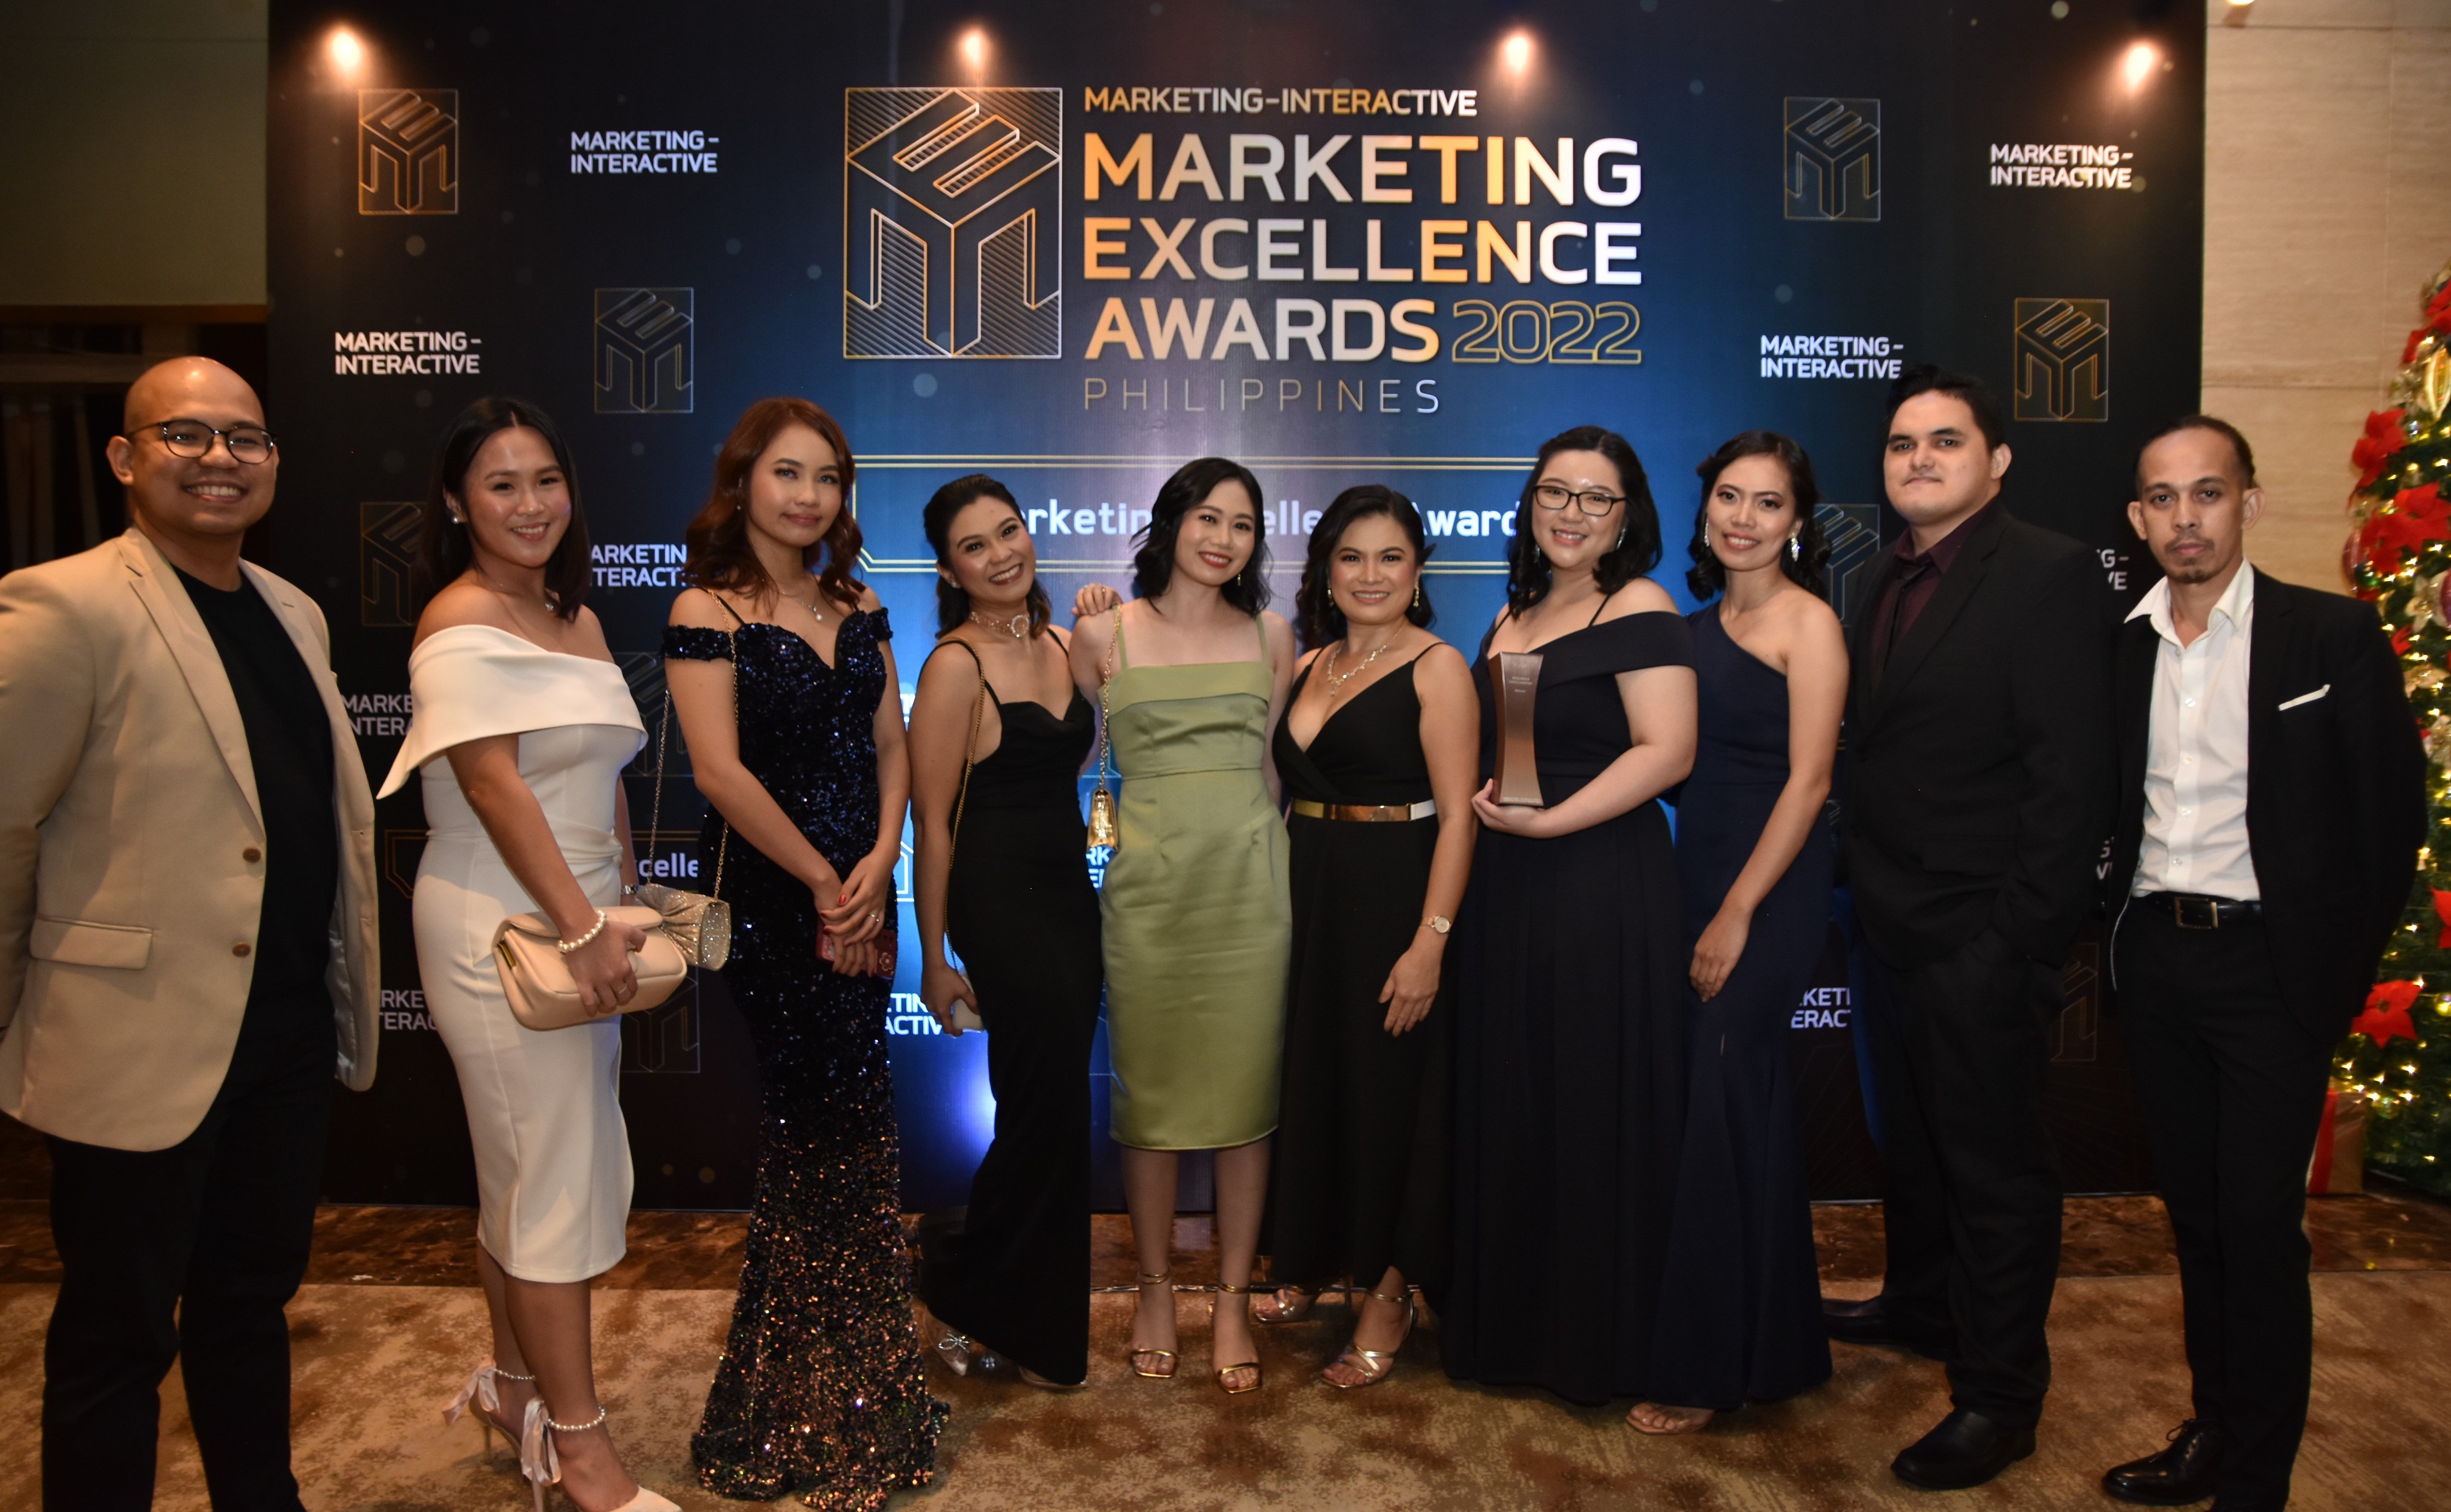 moneymax marketing team wins bronze in content marketing